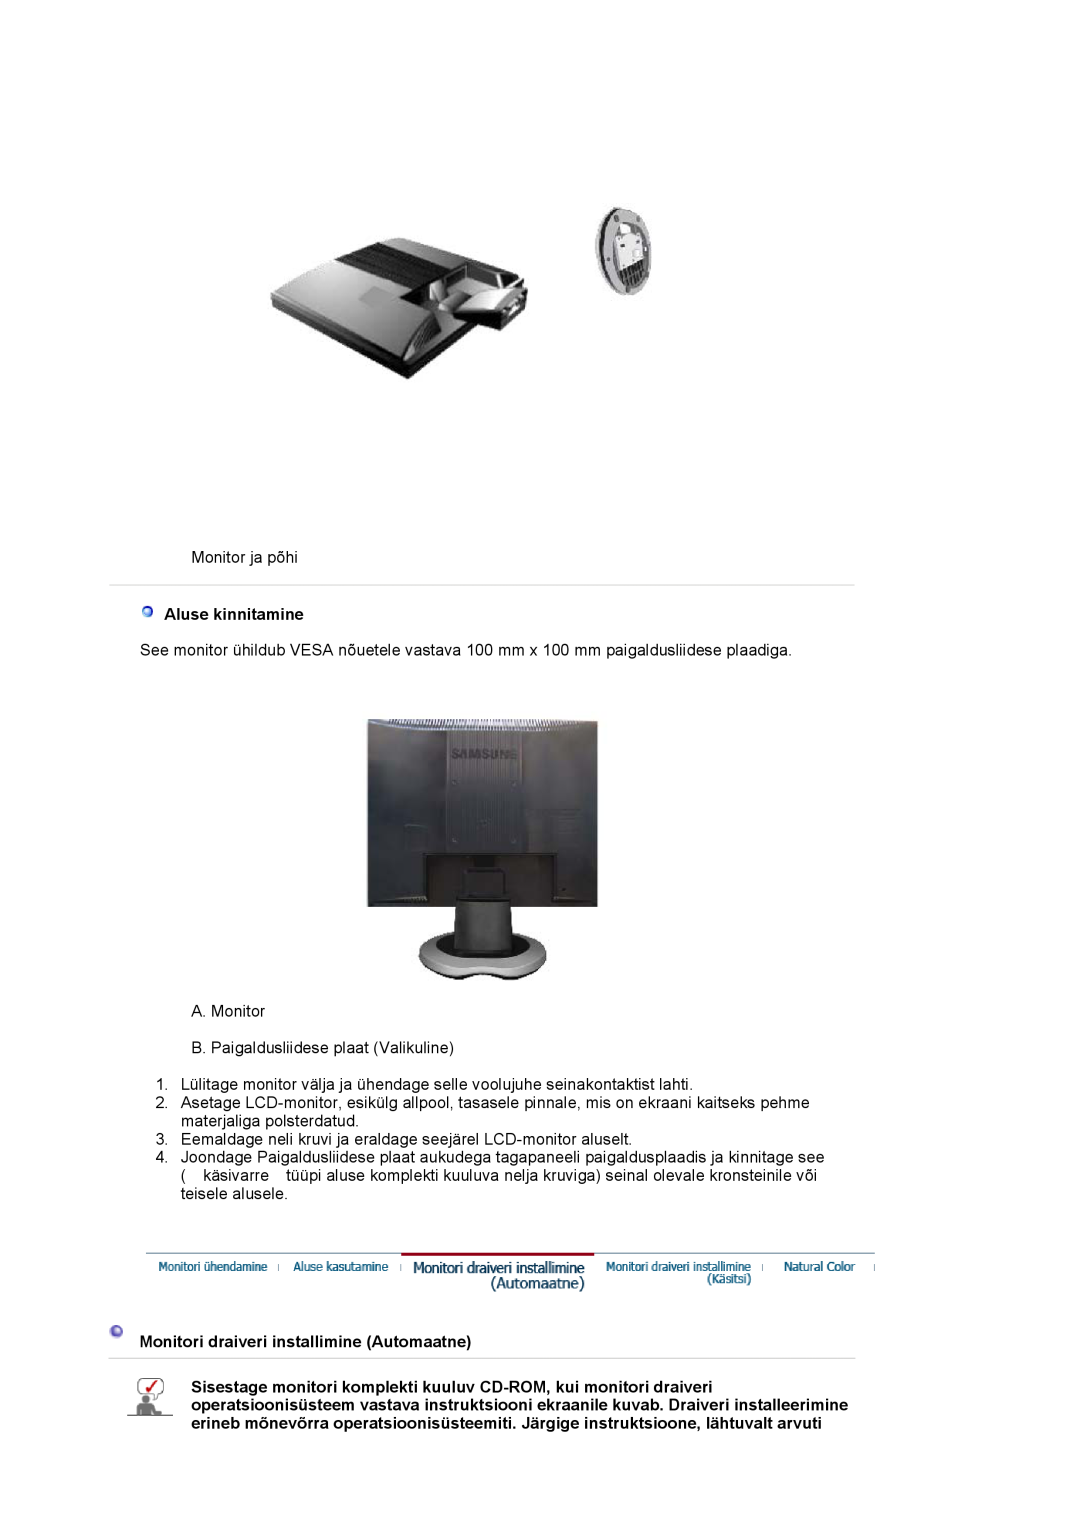 Samsung LS17MJVKS/EDC manual Aluse kinnitamine, Monitori draiveri installimine Automaatne 